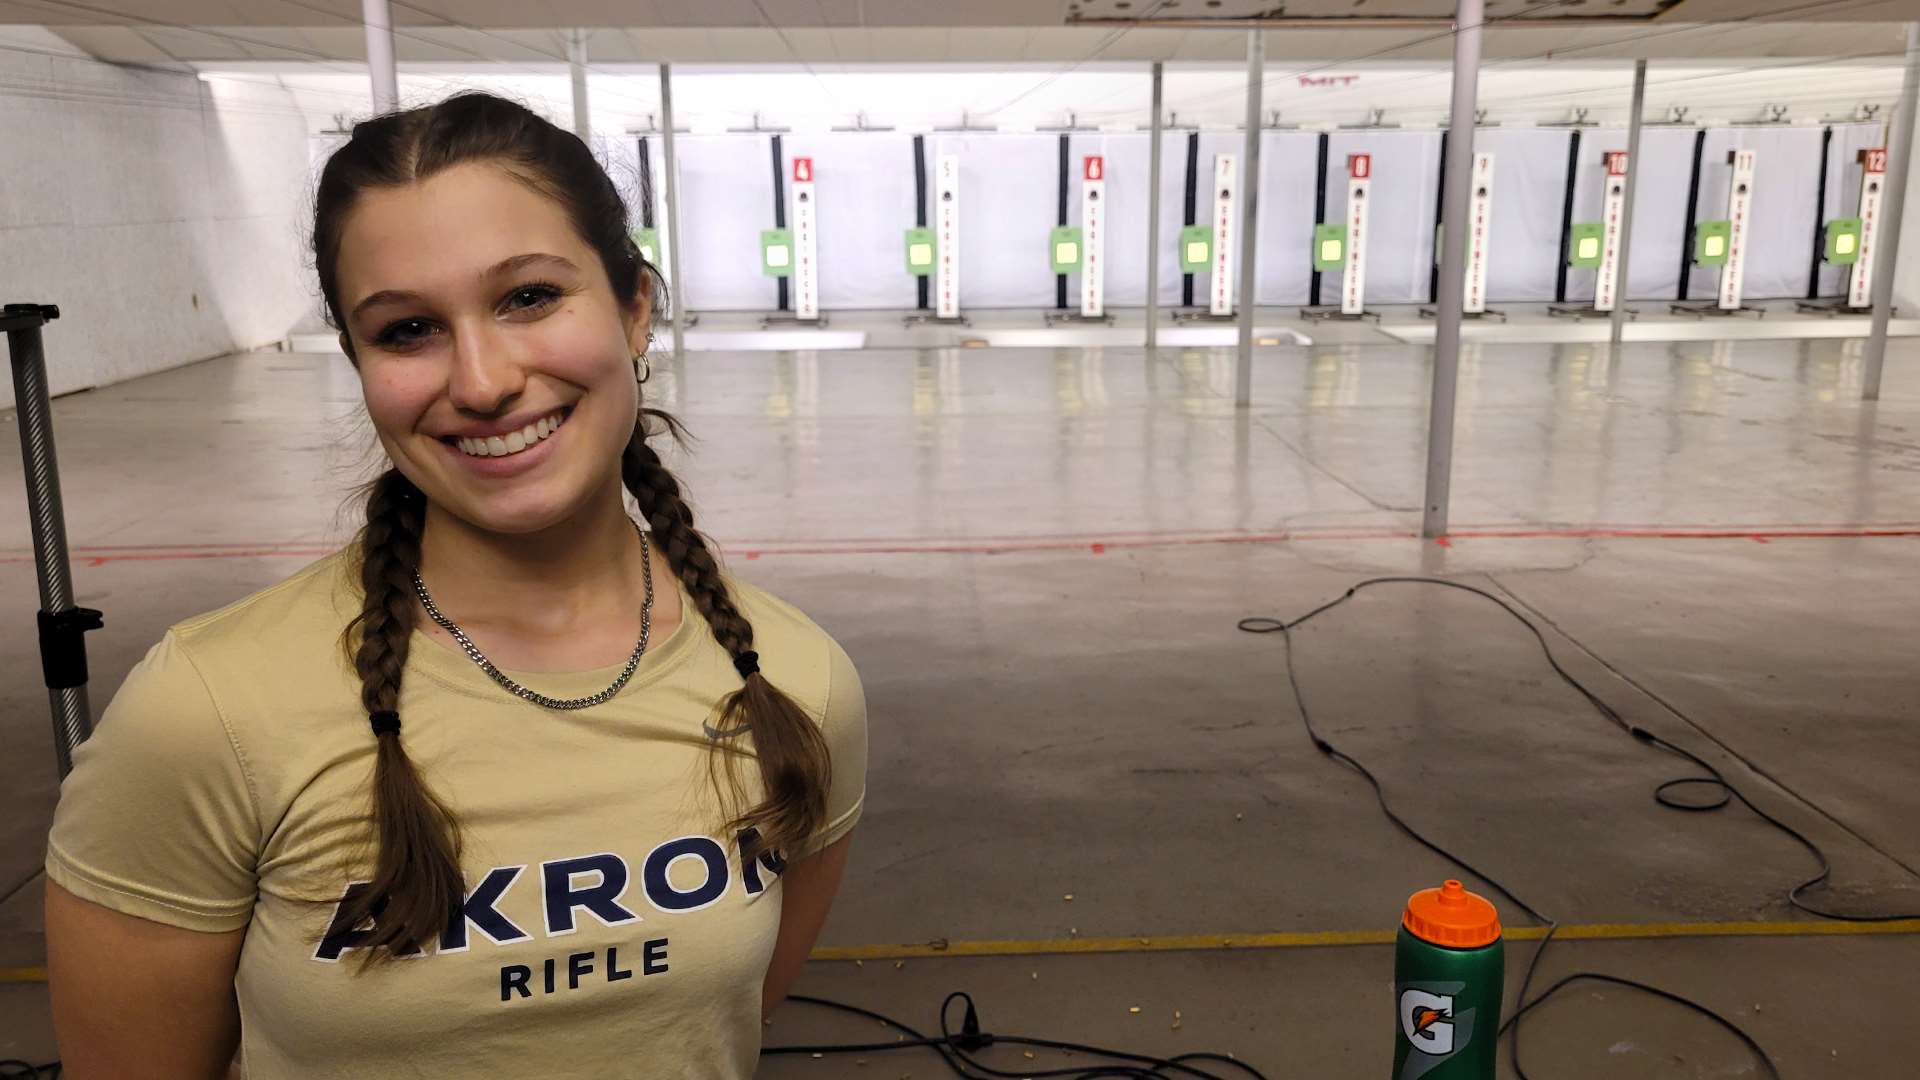 Akron rifle team competitor Katie Platz